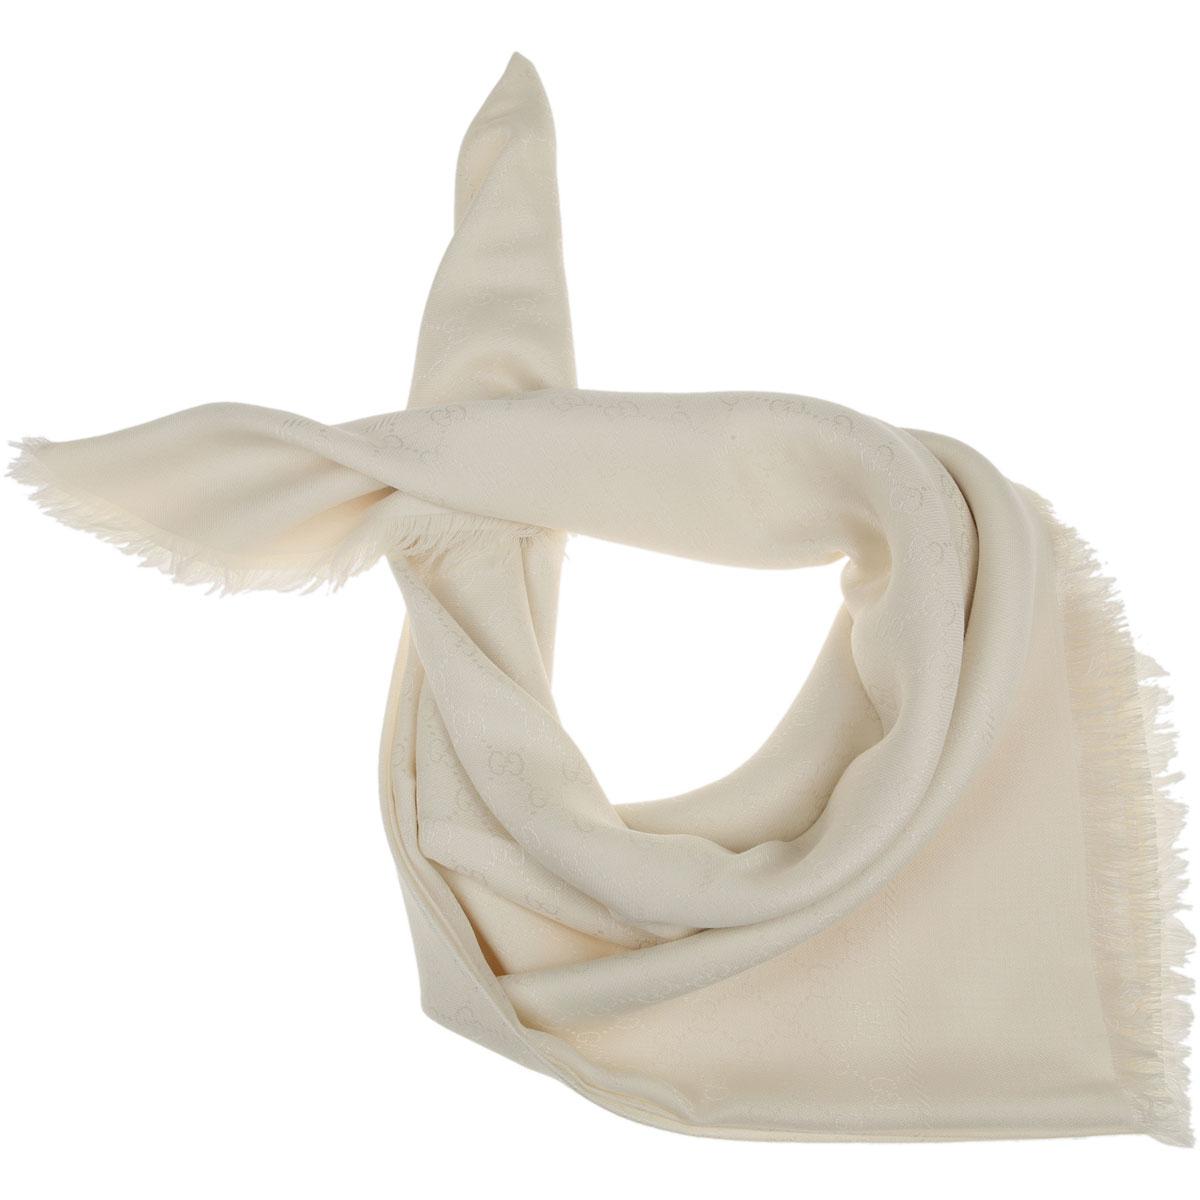 gucci women's scarves sale